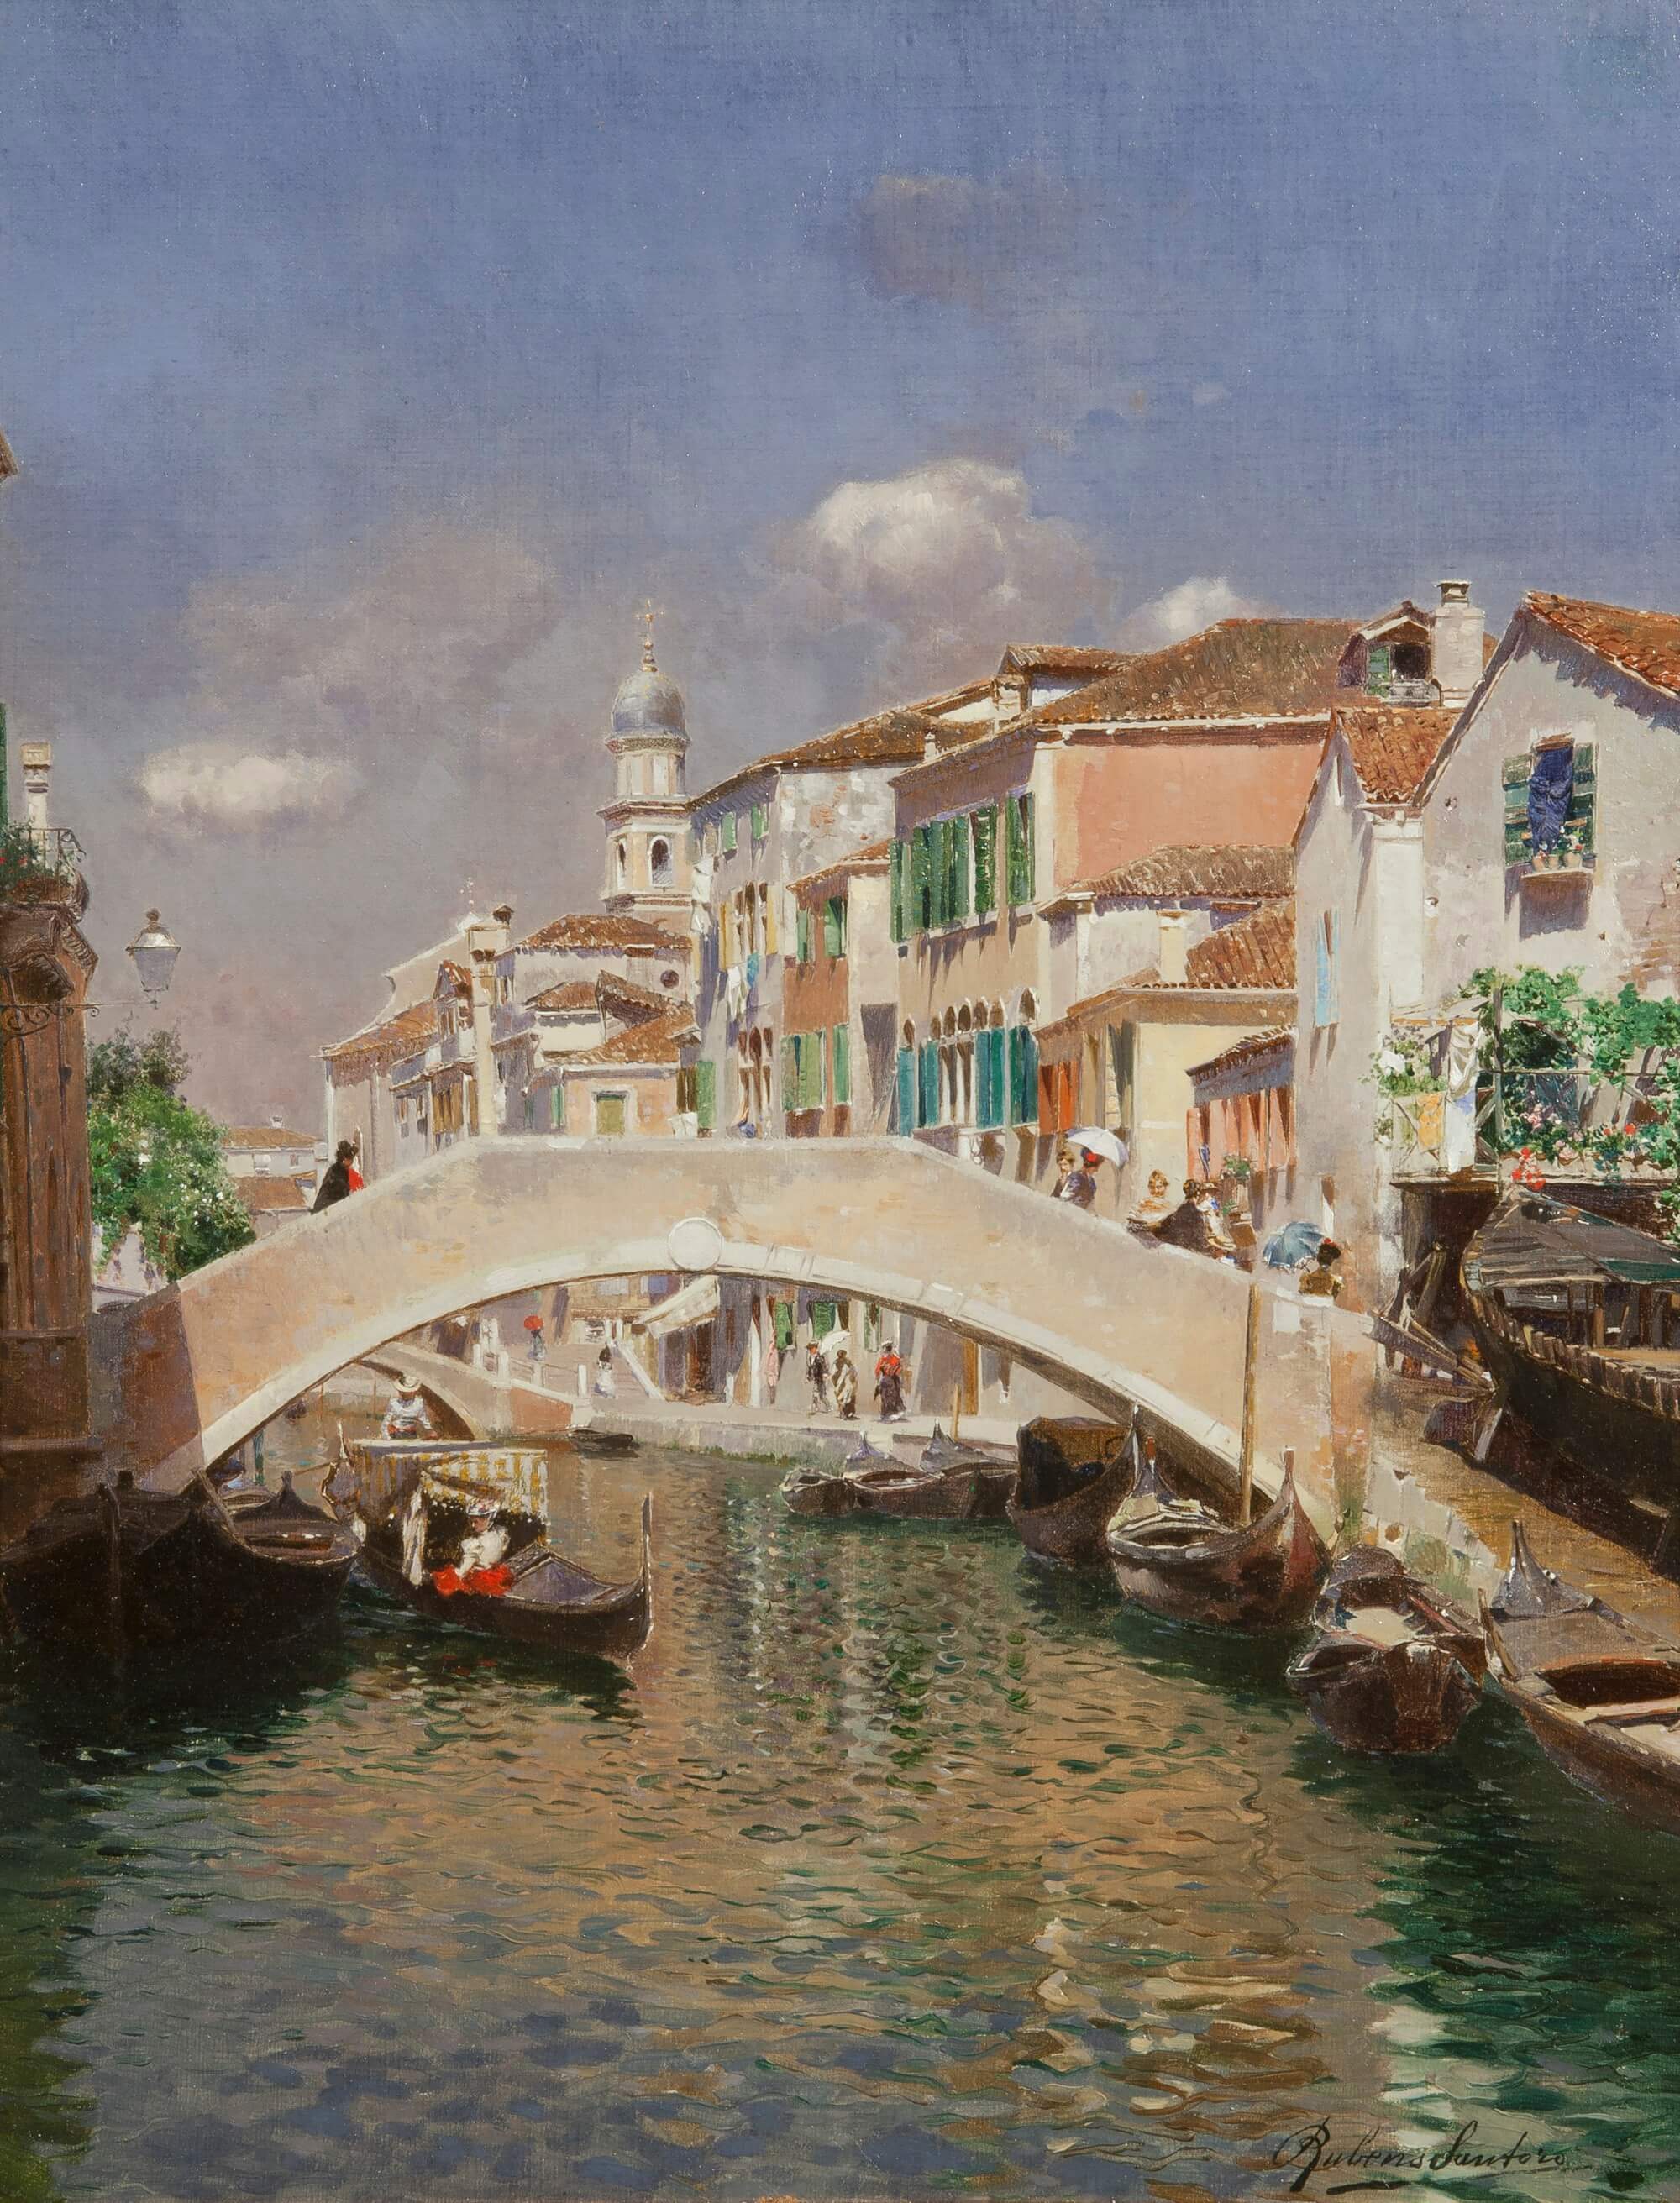 Rubens Santoro. Rio di Ognissanti, Venice. Oil on canvas. Bottegantica Gallery